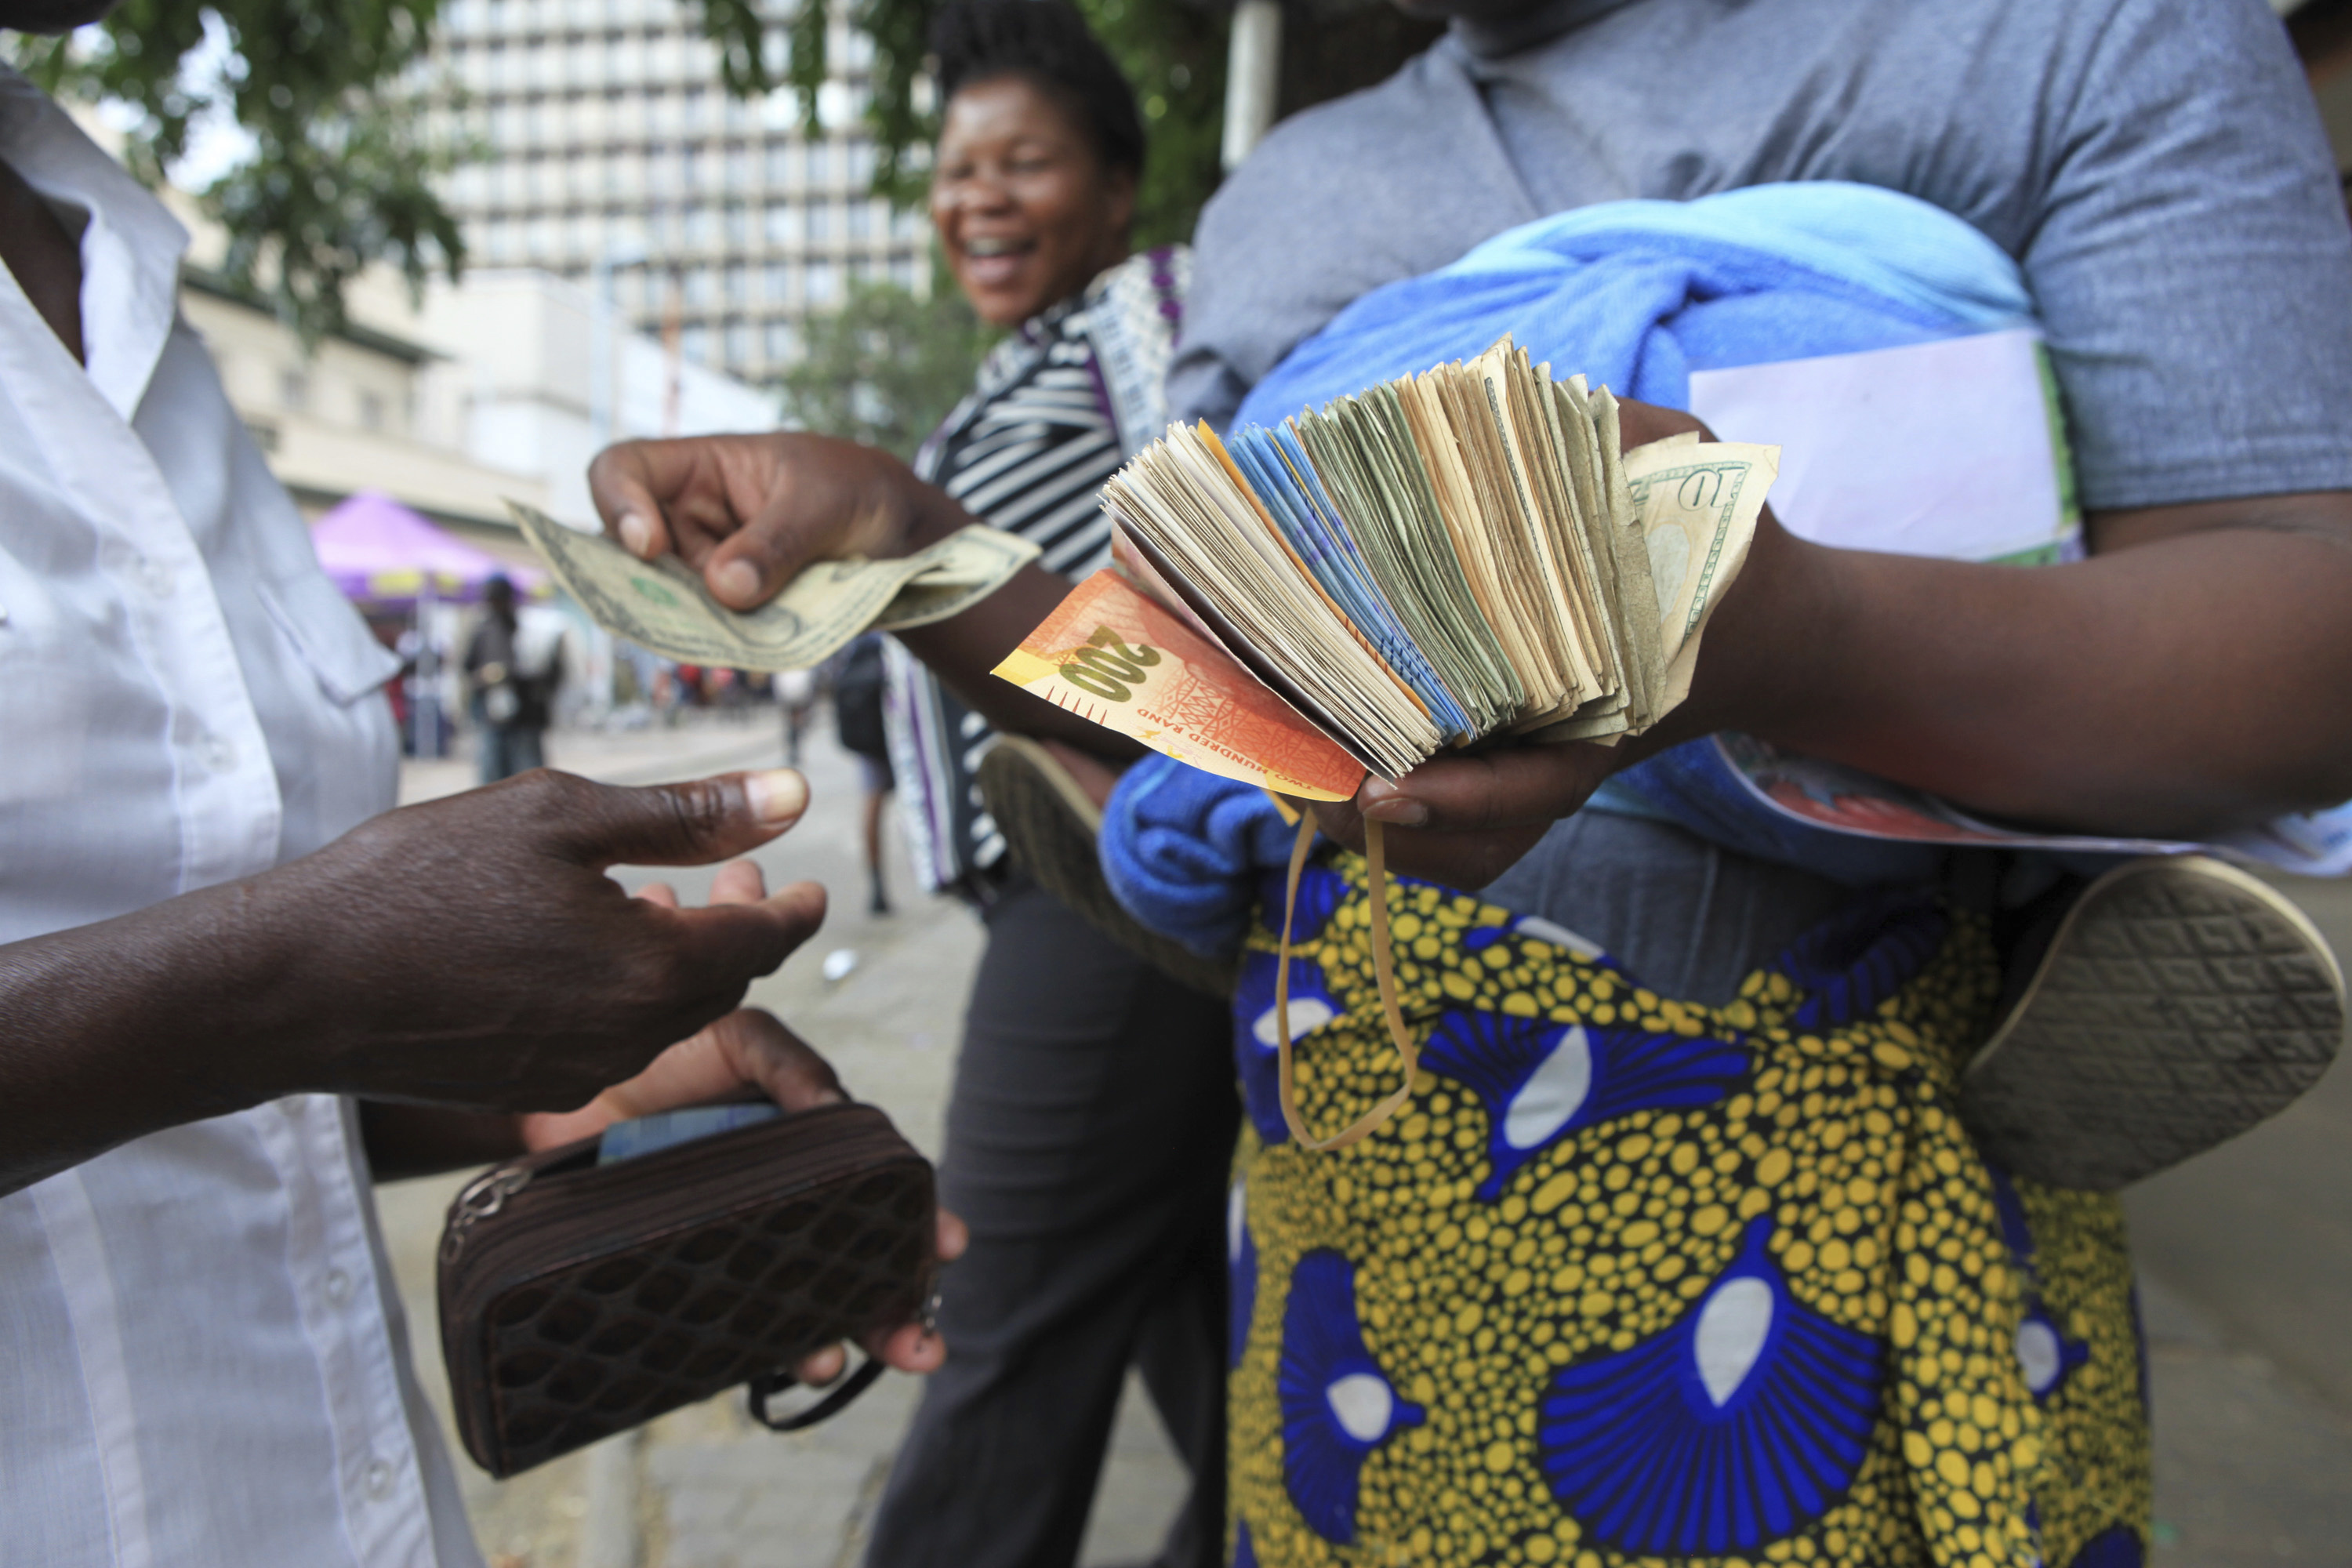 Зимбабве се прощава с банкнота от 100 трилиона местни долара